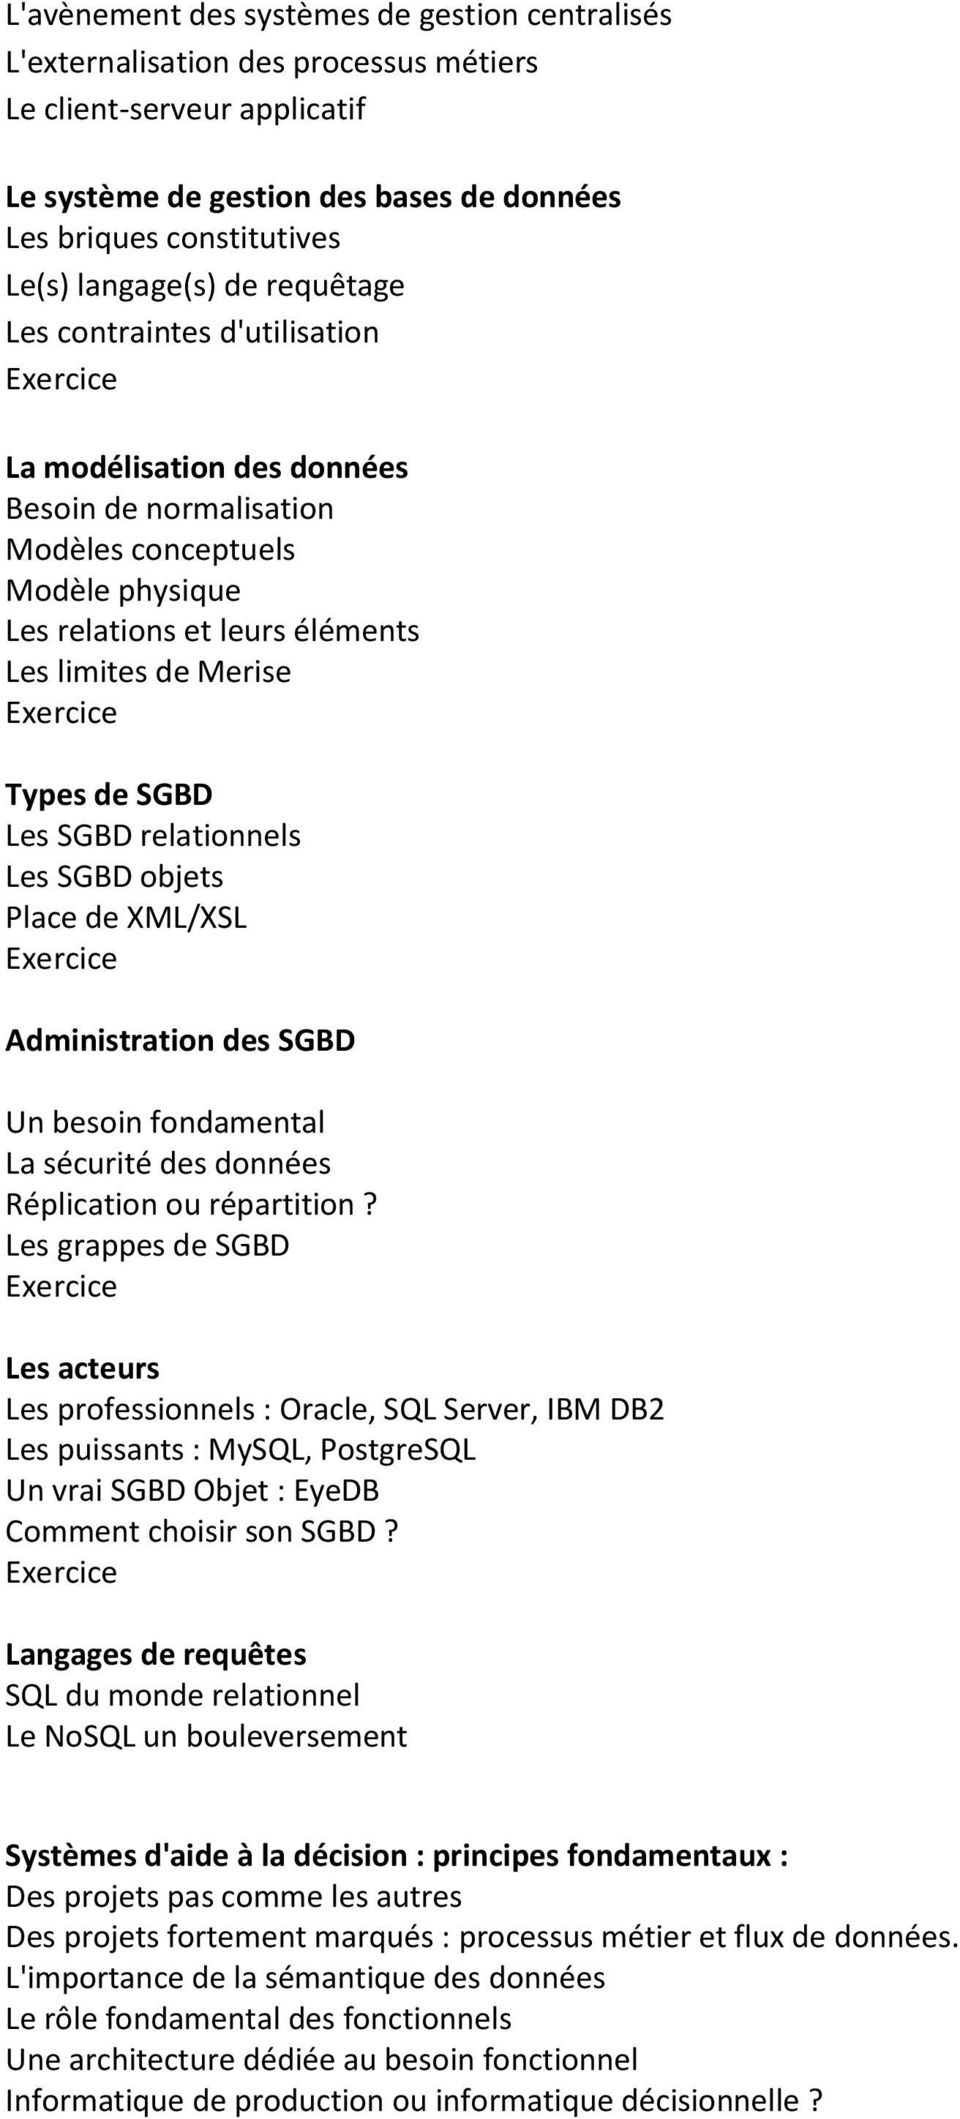 Types de SGBD Les SGBD relationnels Les SGBD objets Place de XML/XSL Administration des SGBD Un besoin fondamental La sécurité des données Réplication ou répartition?